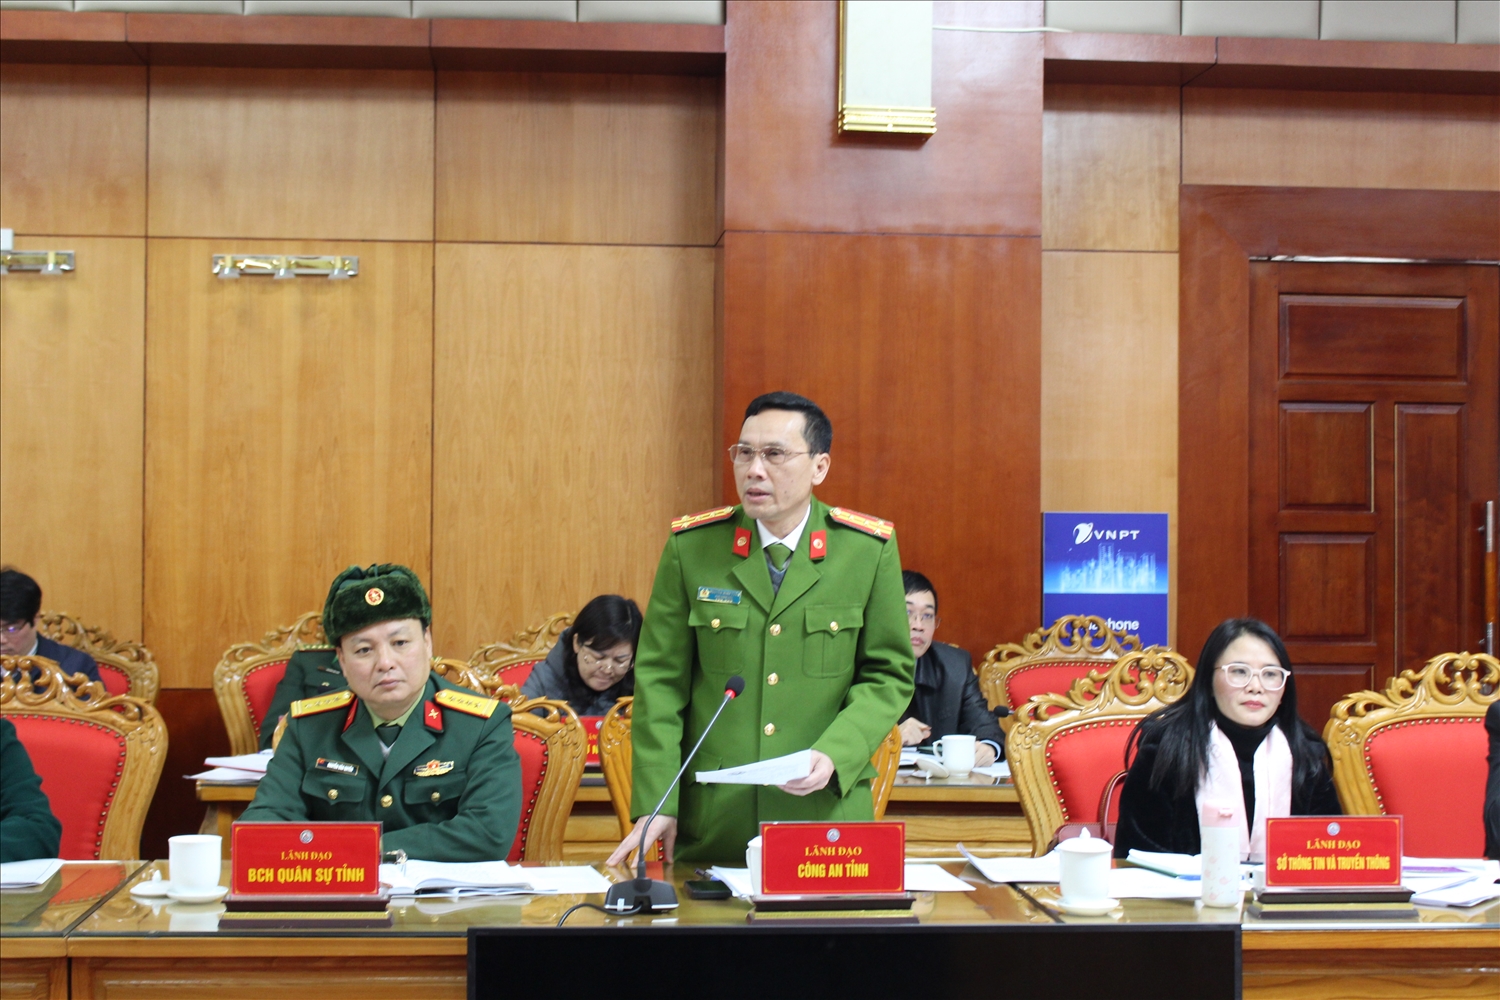 Lãnh đạo Công an tỉnh Lạng Sơn trả lời các câu hỏi của phóng viên tại buổi họp báo